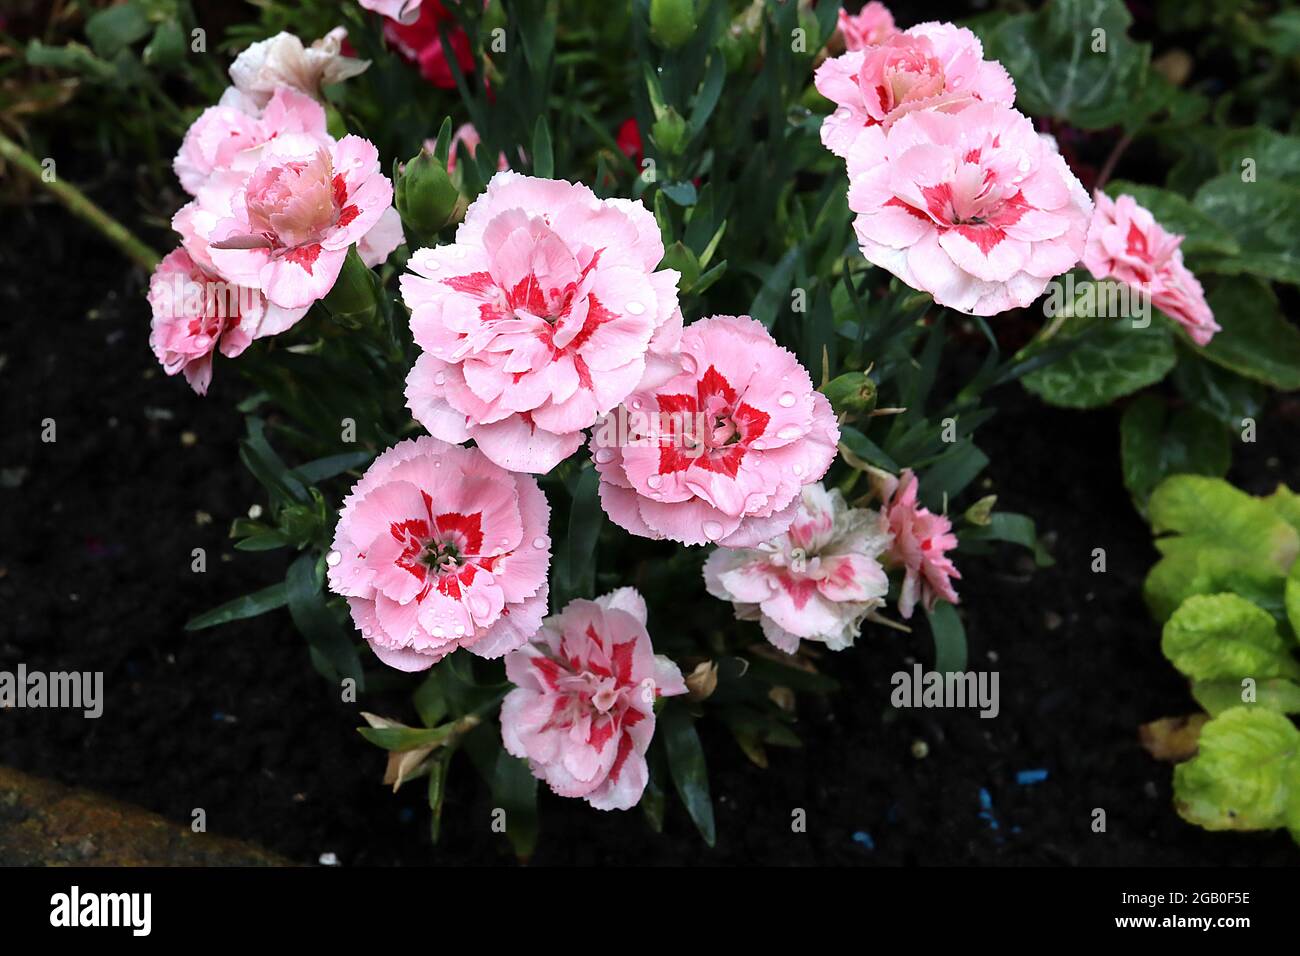 Dianthus caryophyllus 'Oscar Pink' clavel Oscar Pink – flores de color rosa pálido con ojos rojos y pétalos alados, junio, Inglaterra, Reino Unido Foto de stock